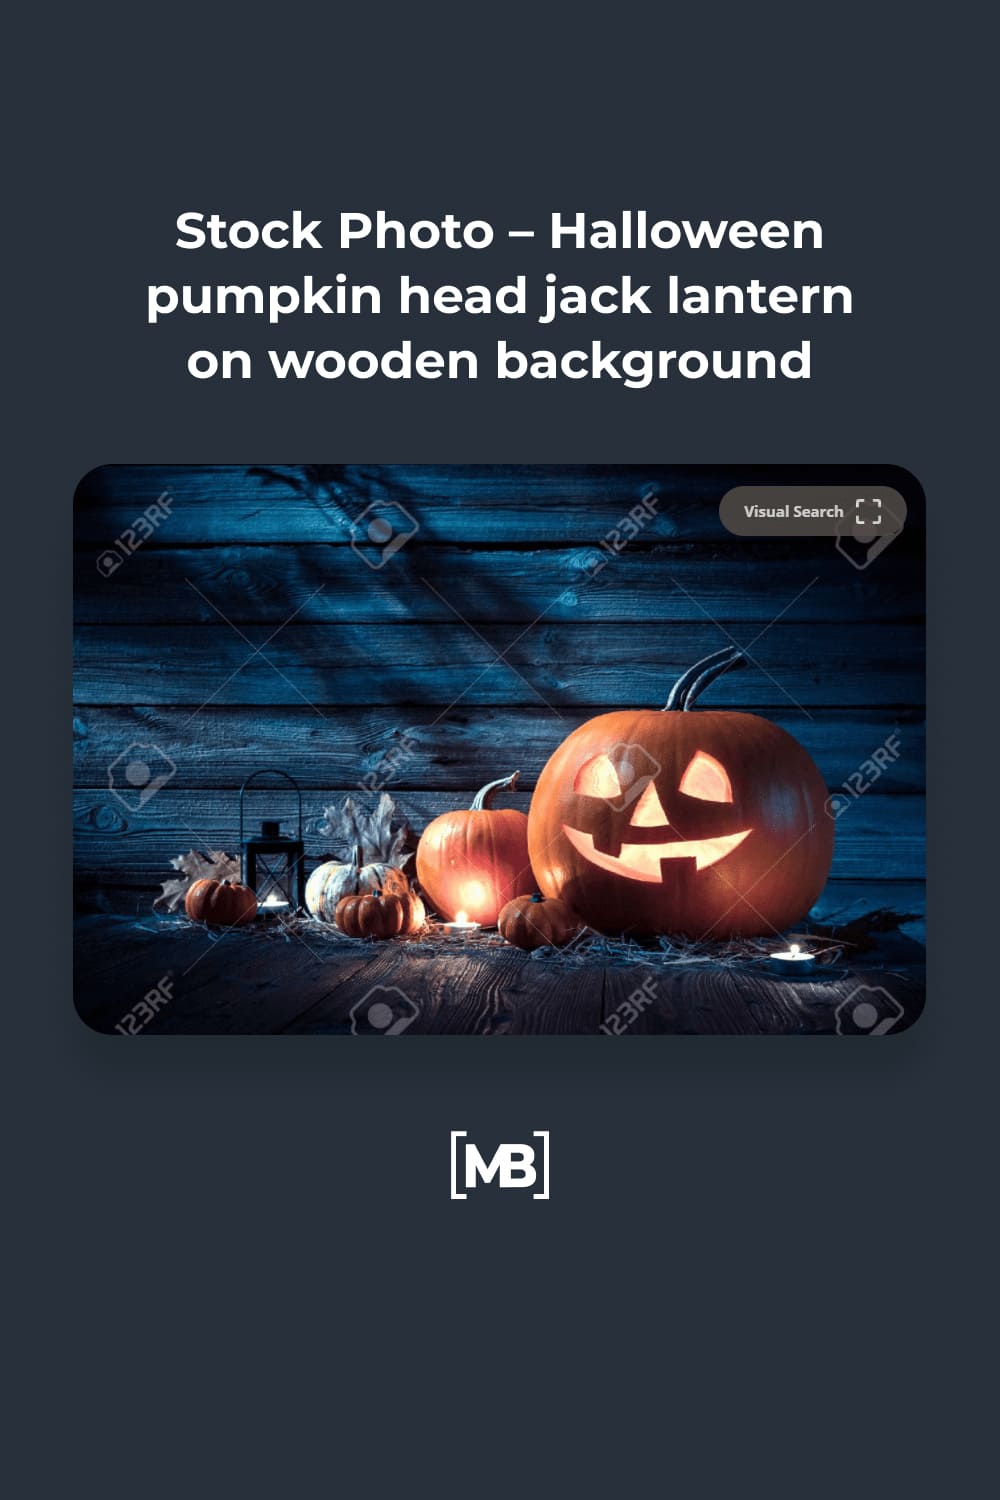 12 Stock Photo – Halloween pumpkin head jack lantern on wooden background